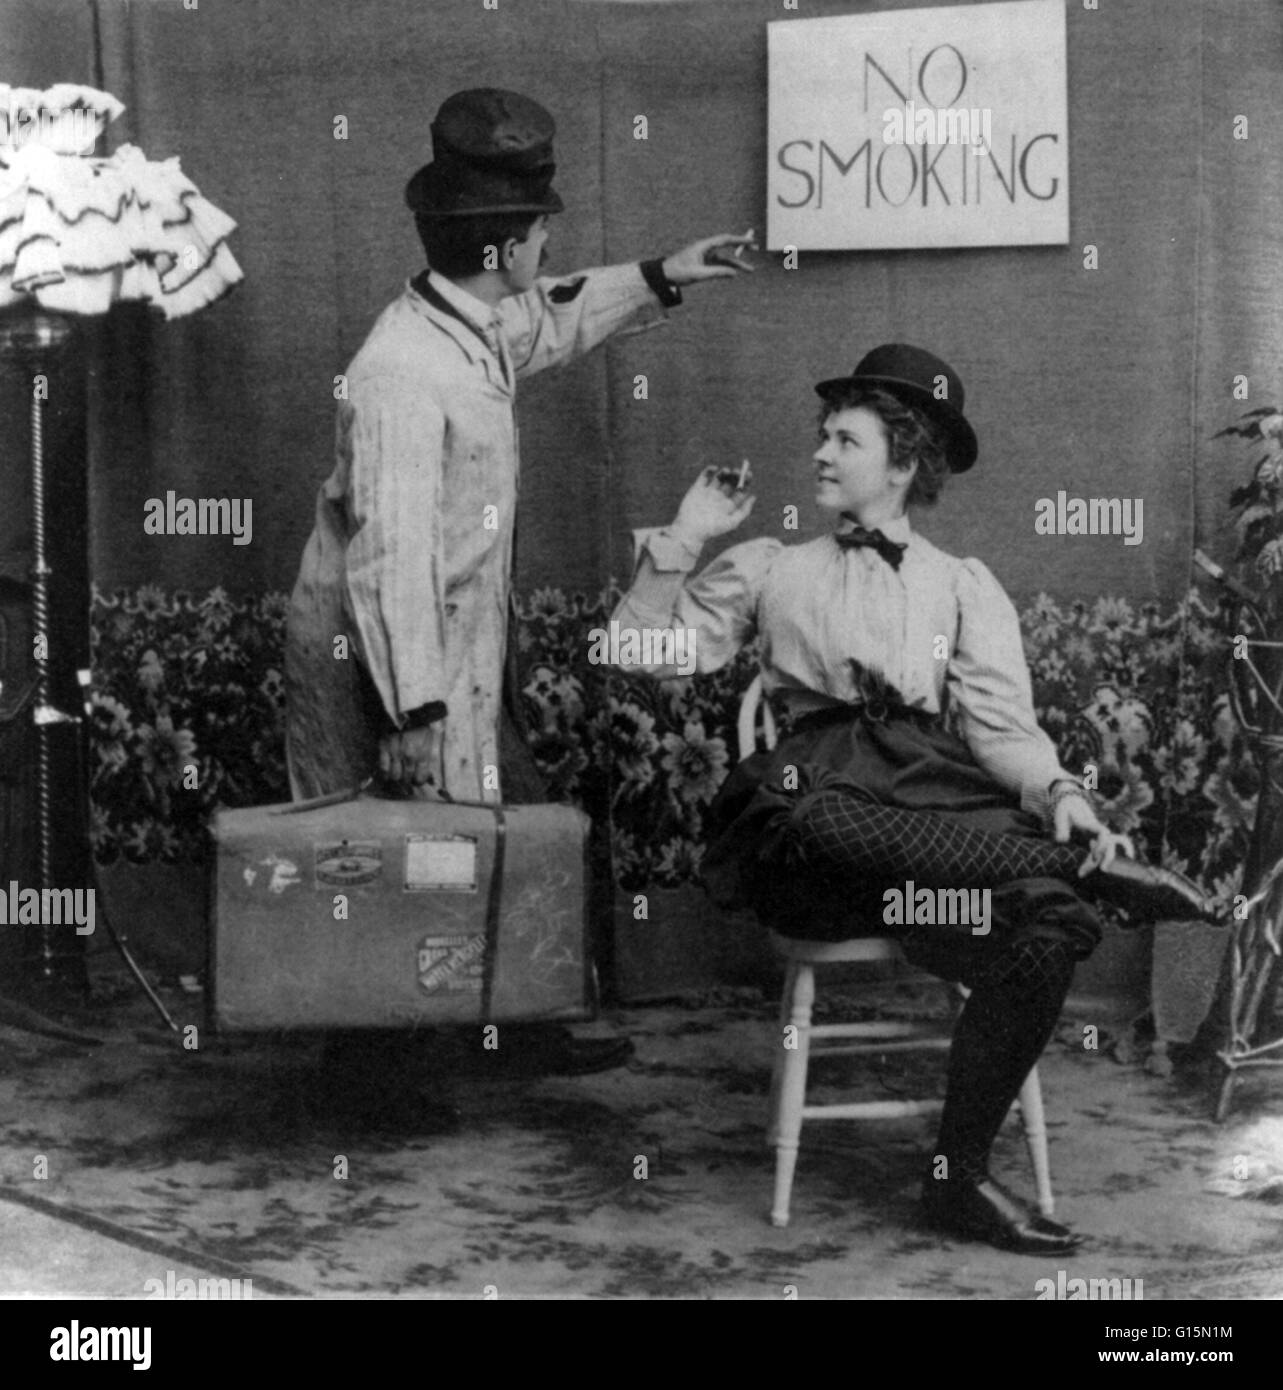 Humoristische Szene der Mann zeigte auf keine Raucher Schild über Frau in Derby und Pumphose, die Zigarette rauchen ist. Pumphose ist ein Wort, das auf mehrere Arten von geteilten Frauen Kleidungsstücke für den Unterkörper zu verschiedenen Zeiten angewendet wurde. Das Kostüm wurde calle Stockfoto